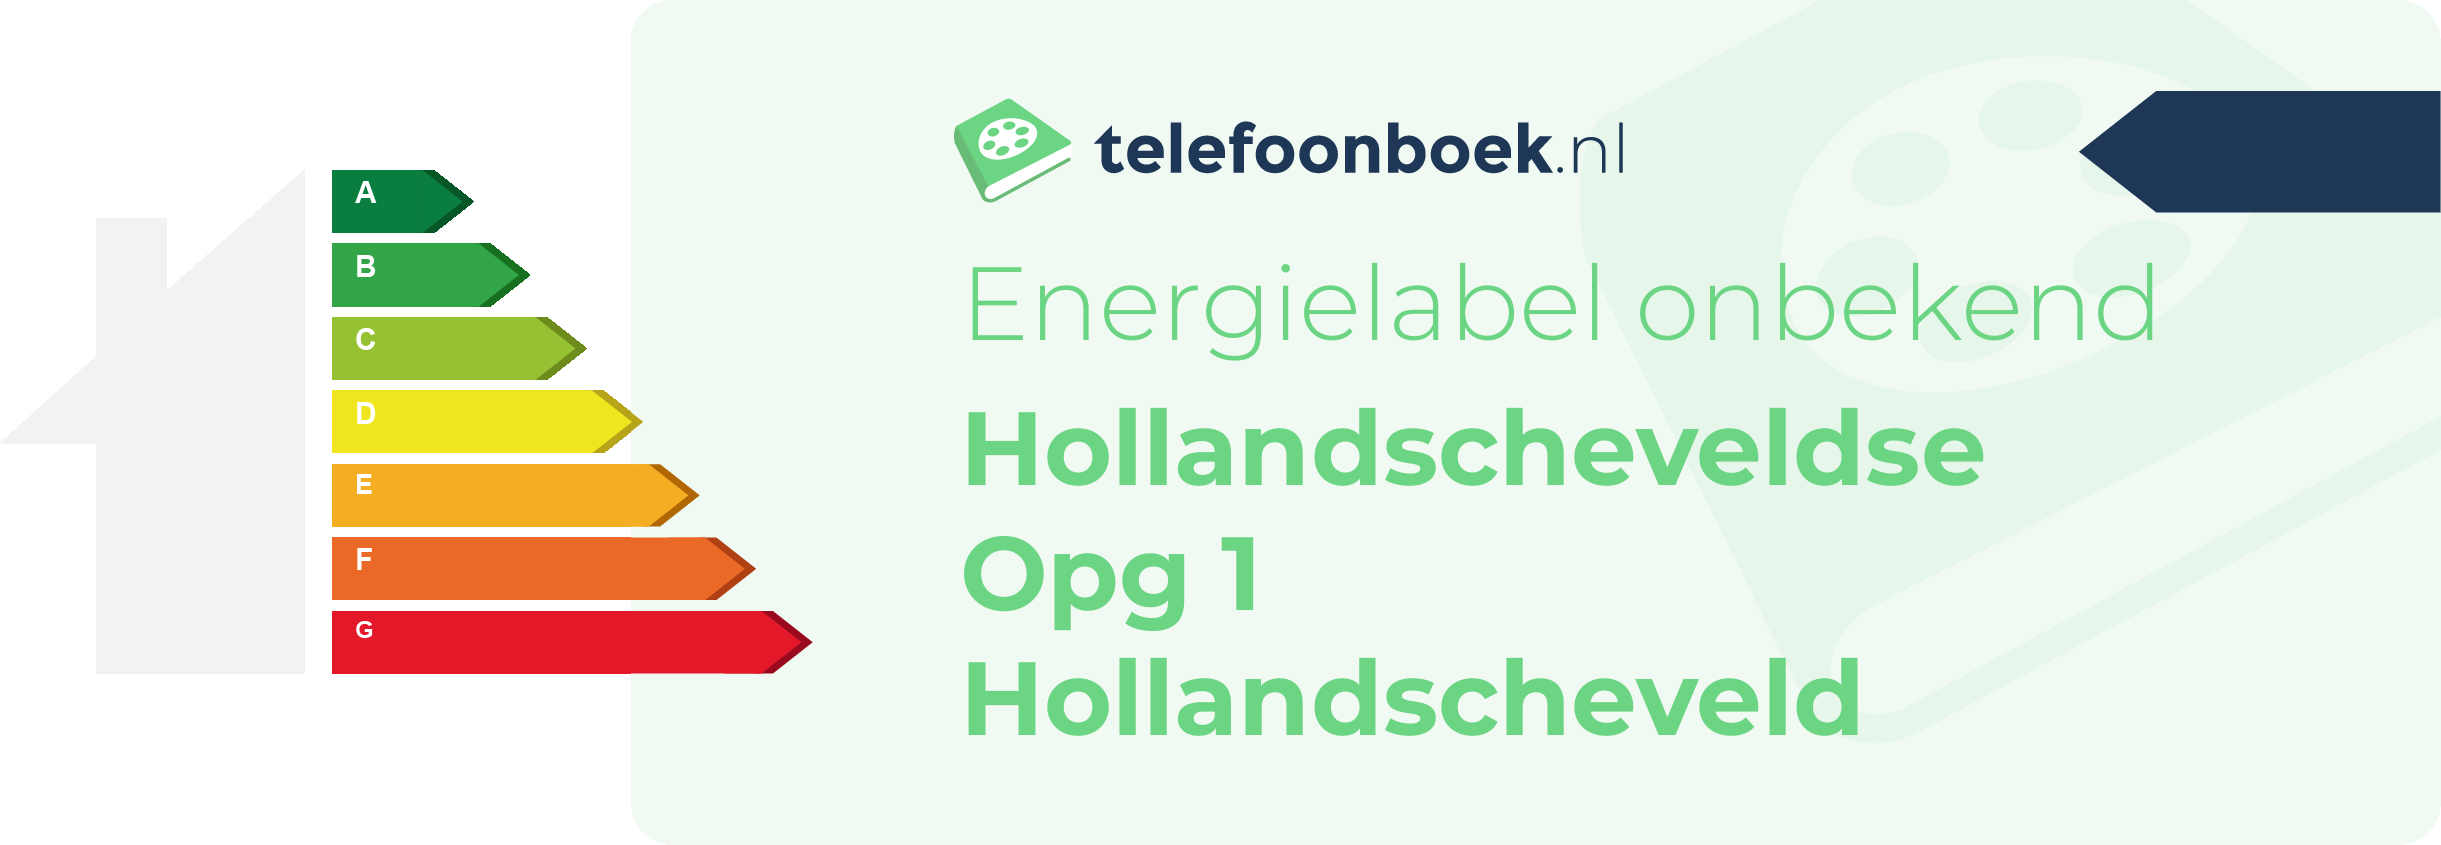 Energielabel Hollandscheveldse Opg 1 Hollandscheveld